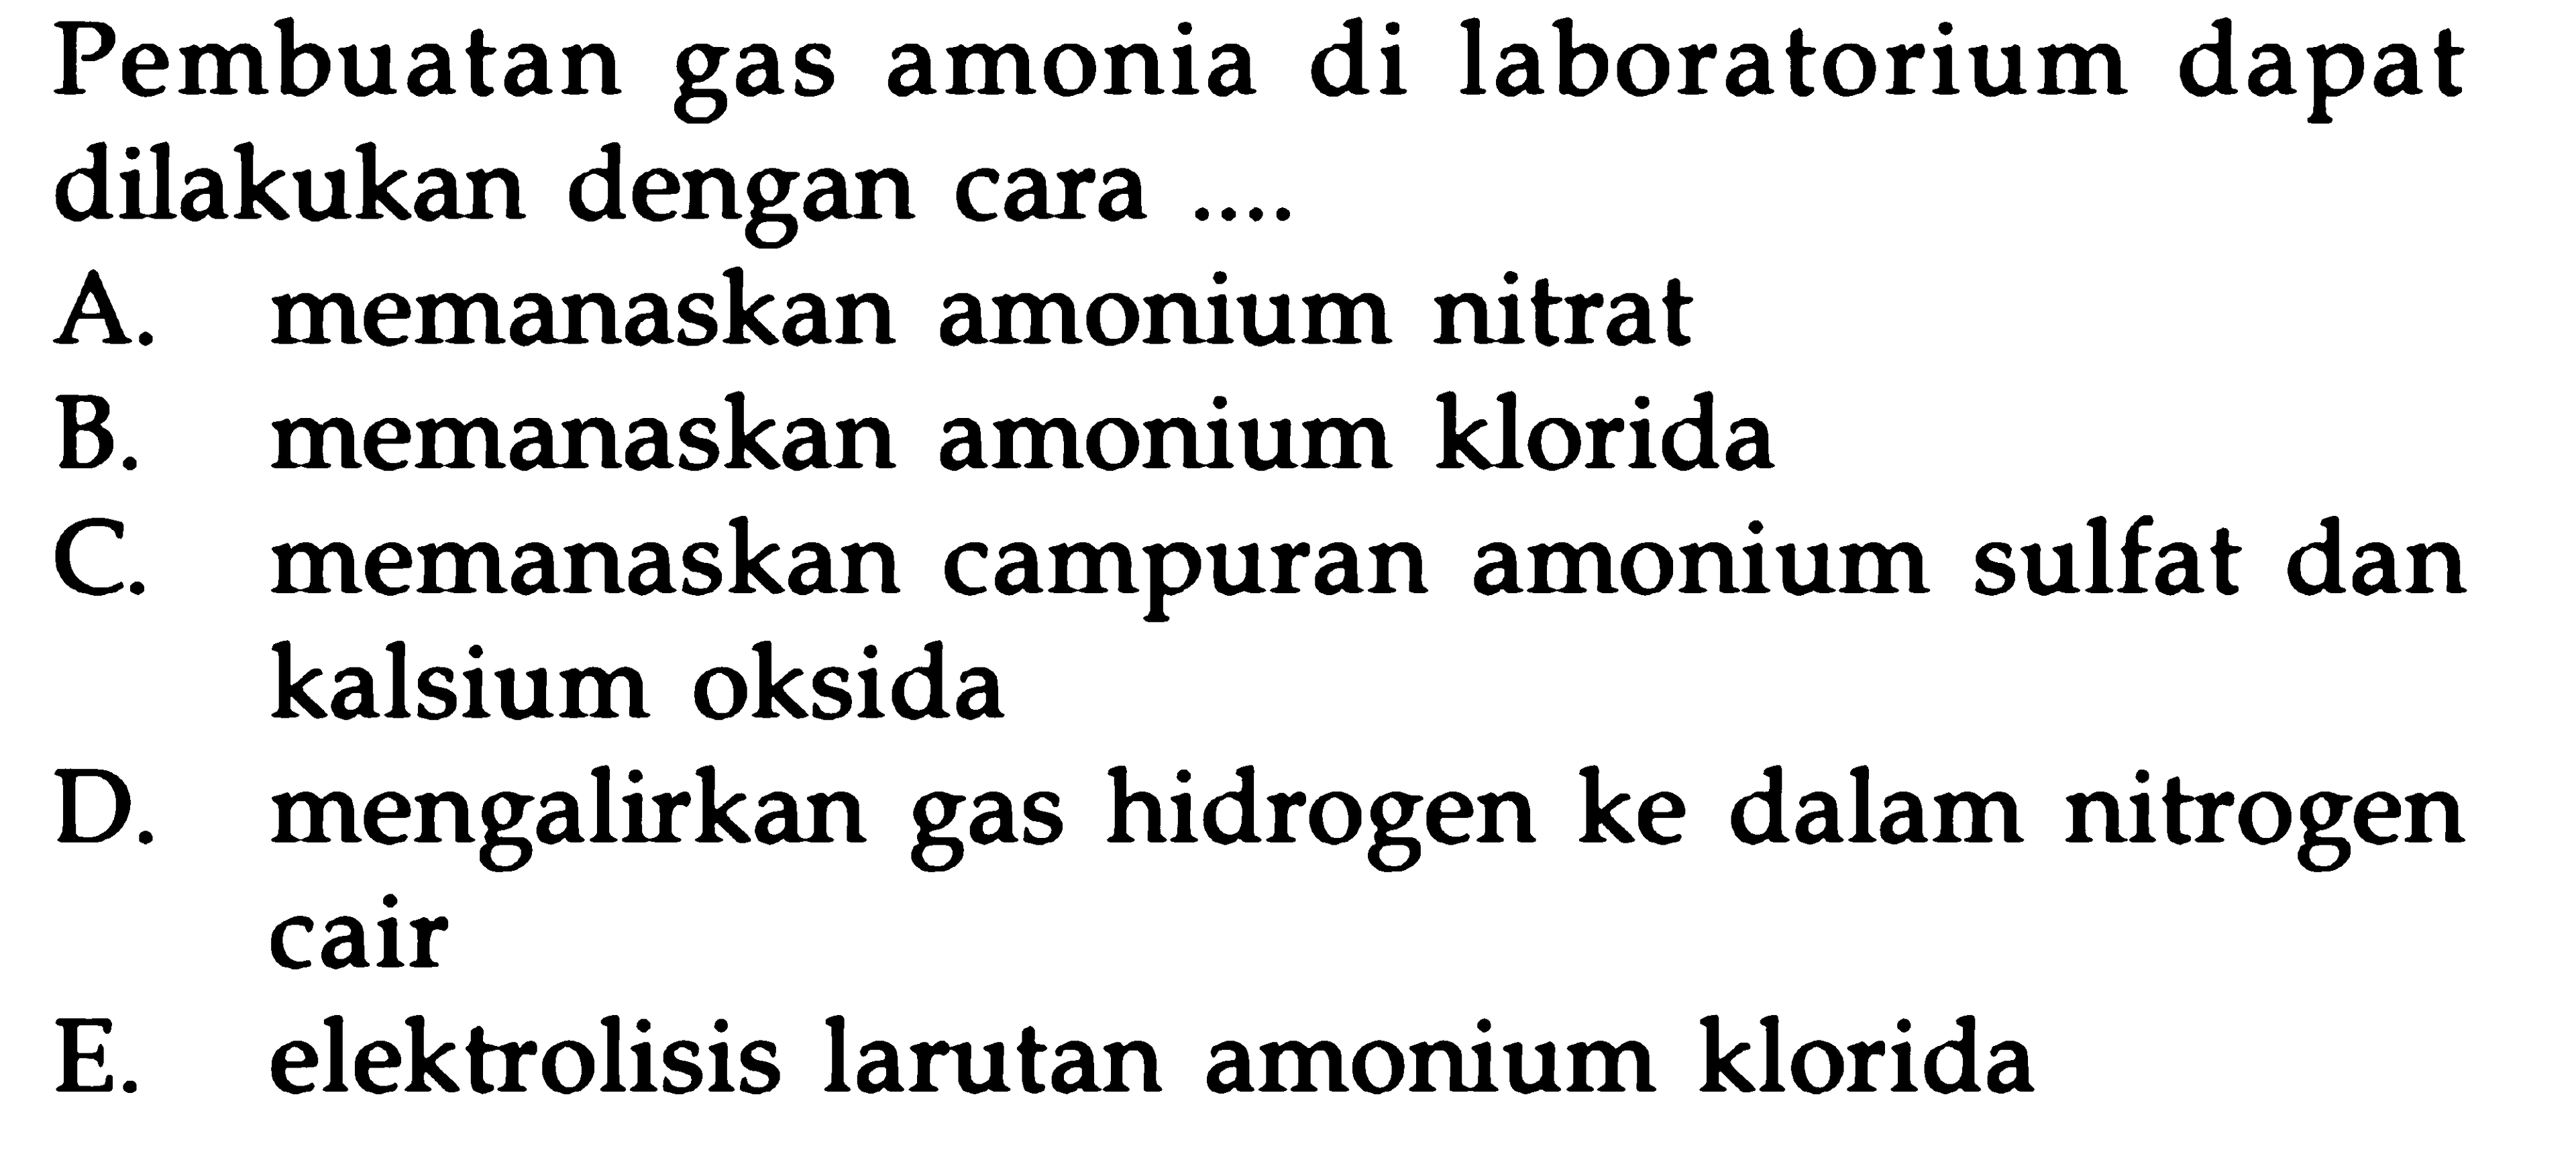 Pembuatan gas amonia di laboratorium dapat dilakukan dengan cara ....